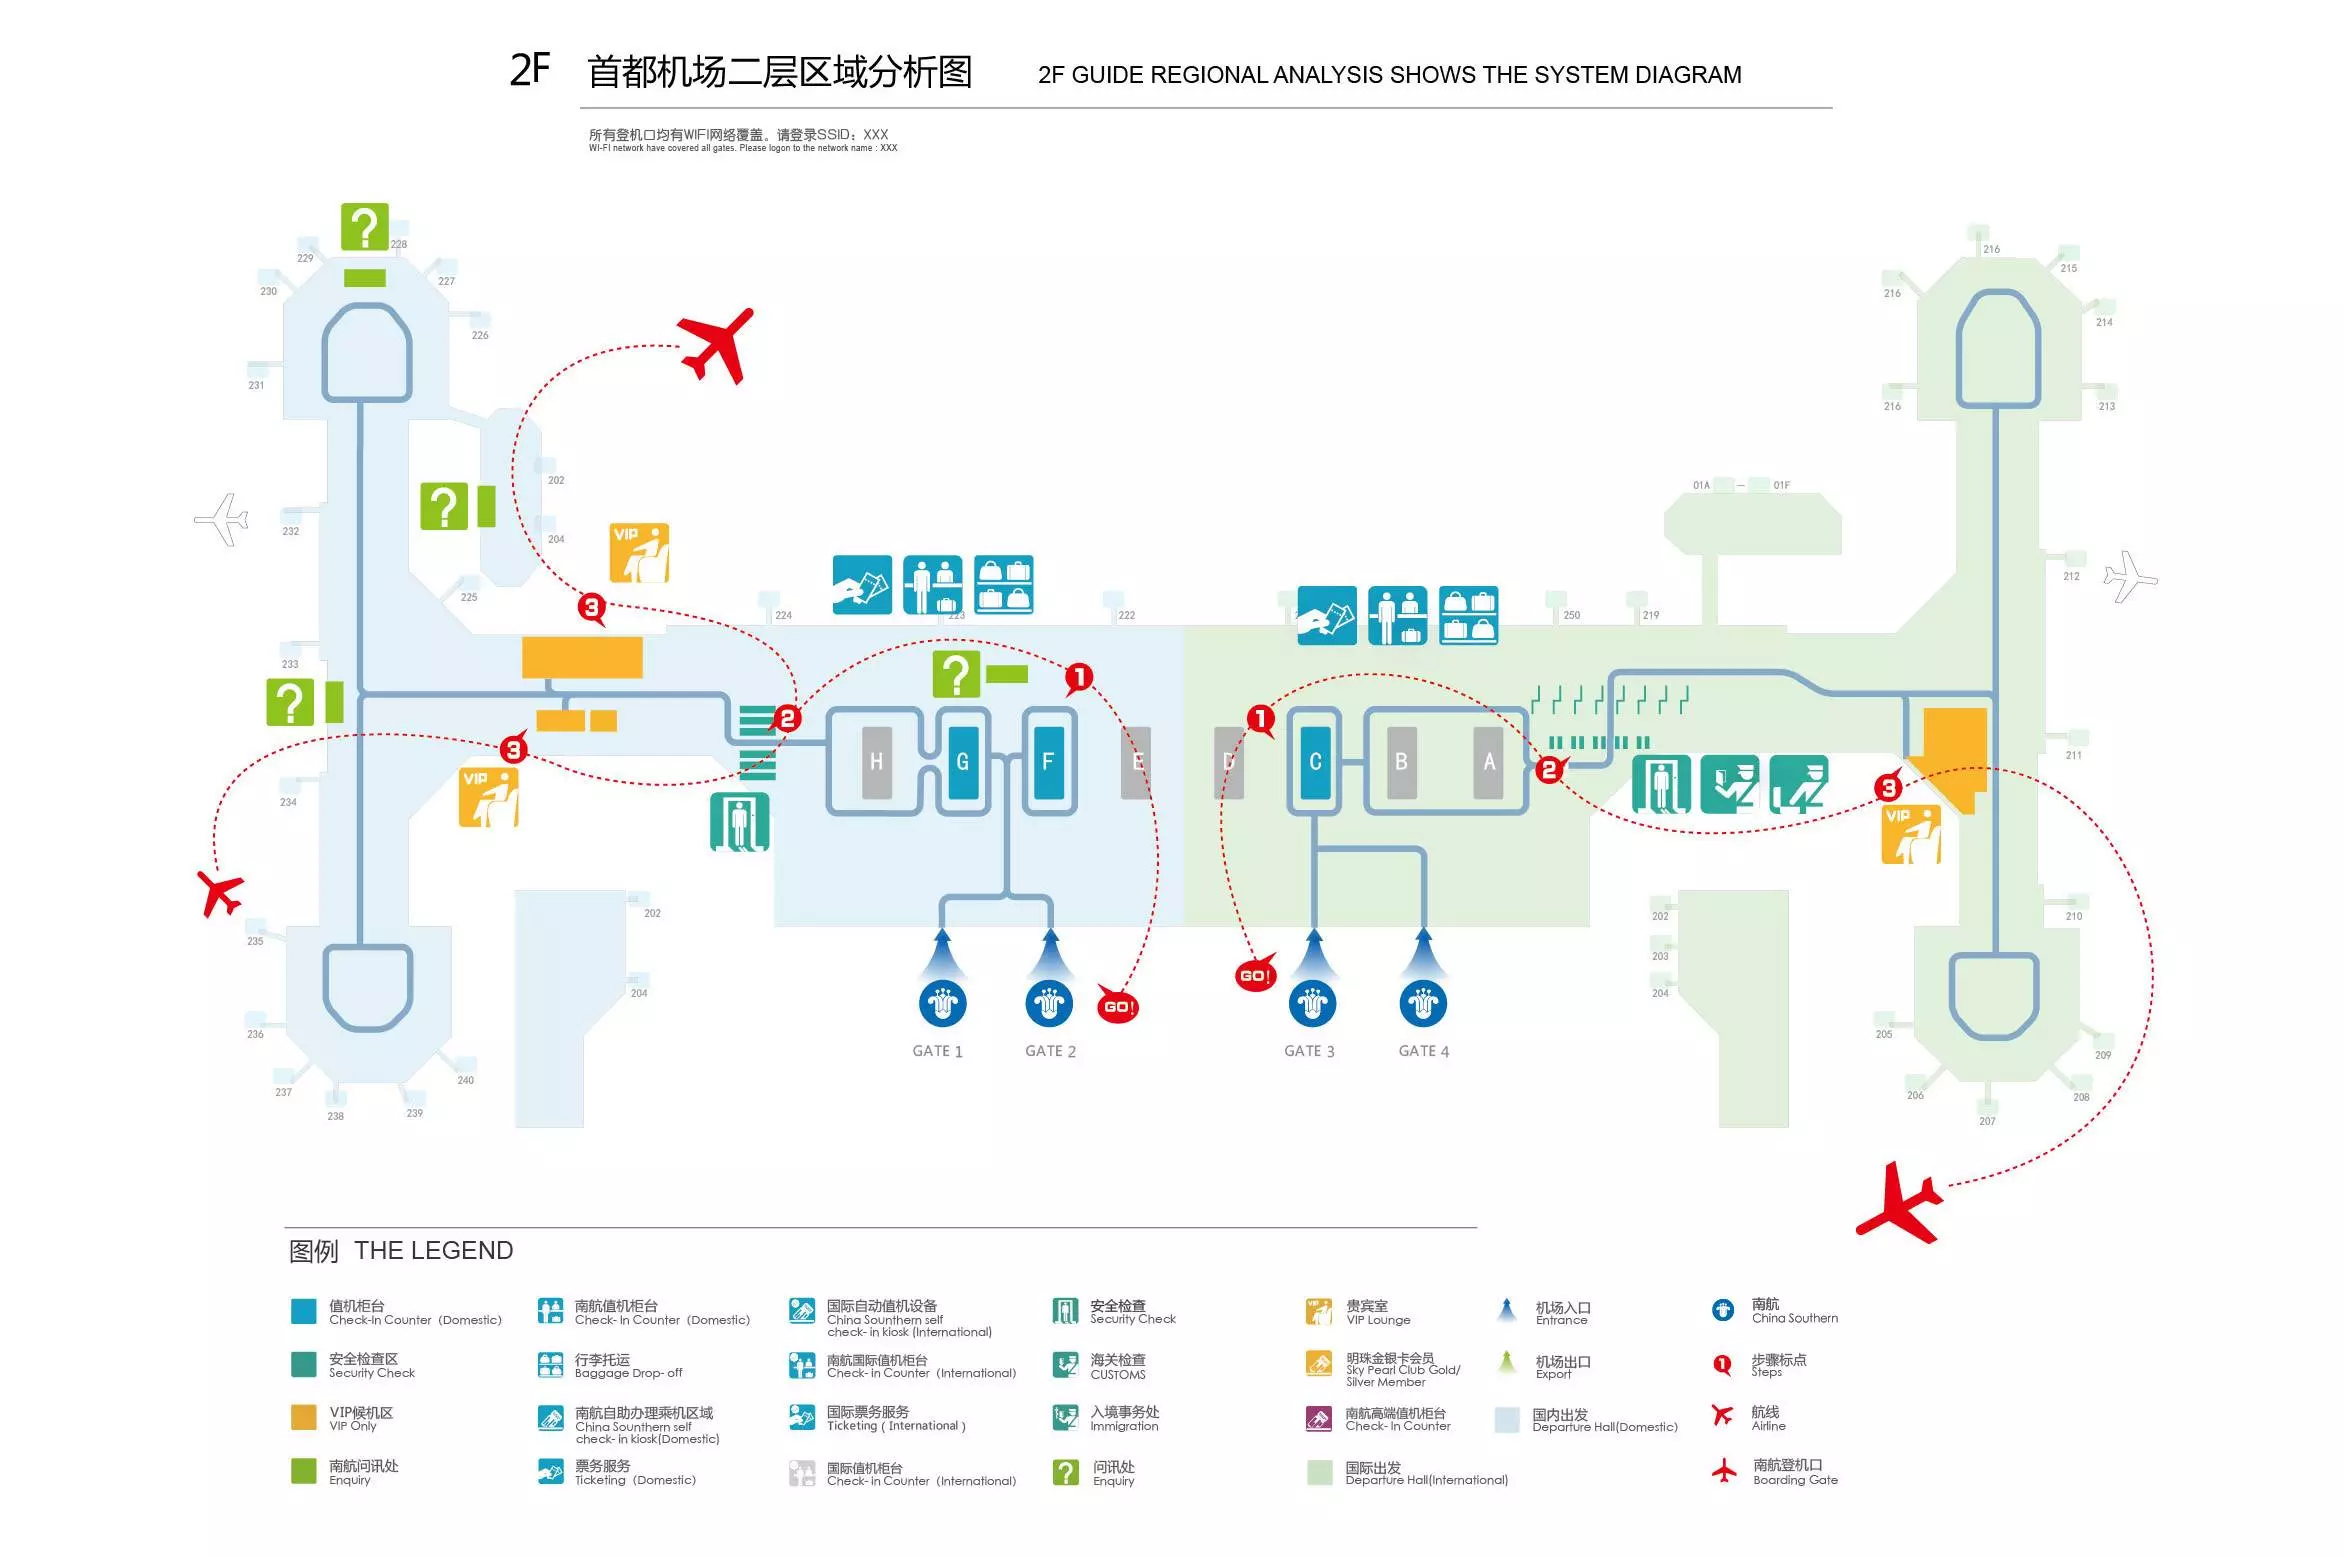 Аэропорт пекина (beijing capital) — bjs